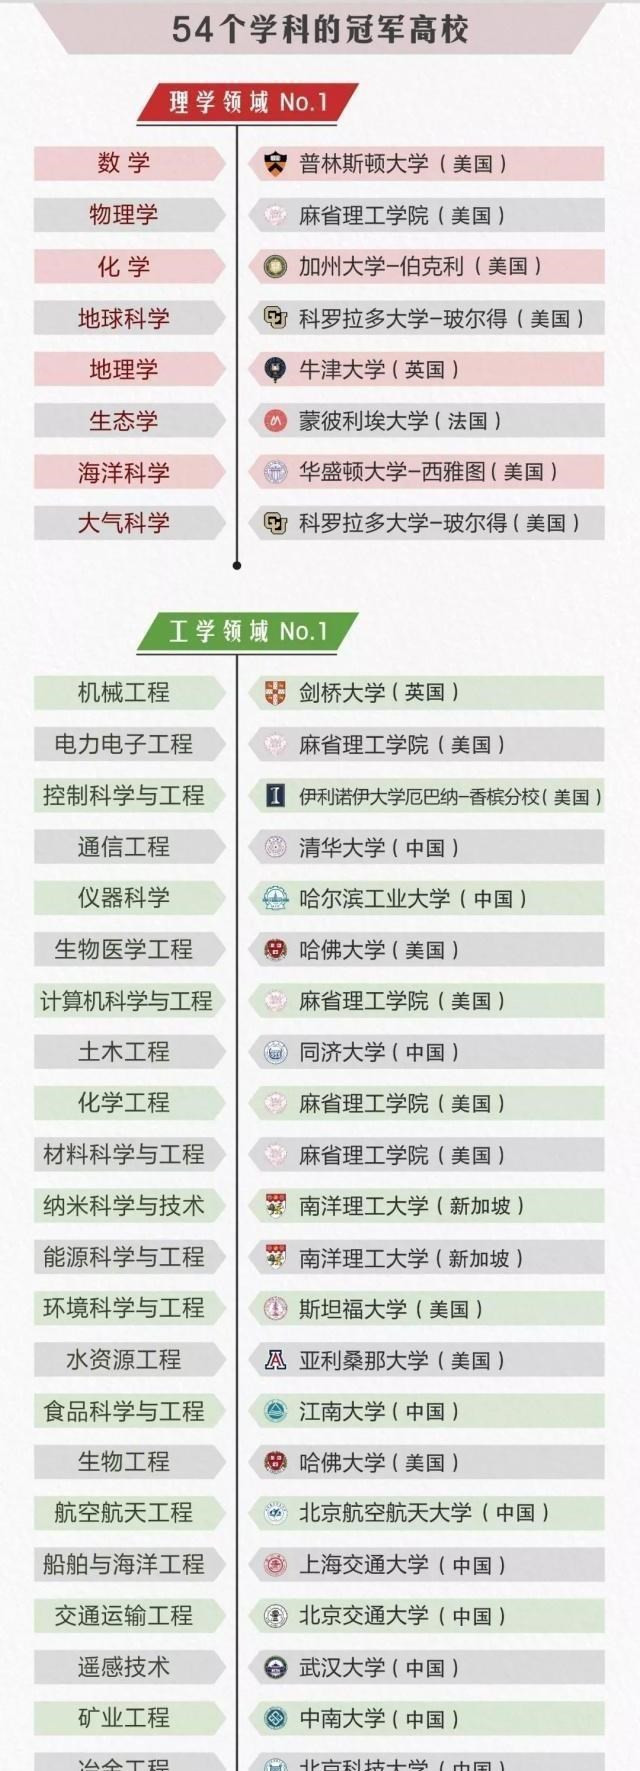 中国10所学科排名“世界第一”的冠军高校, 哈工大上榜, 没有北大